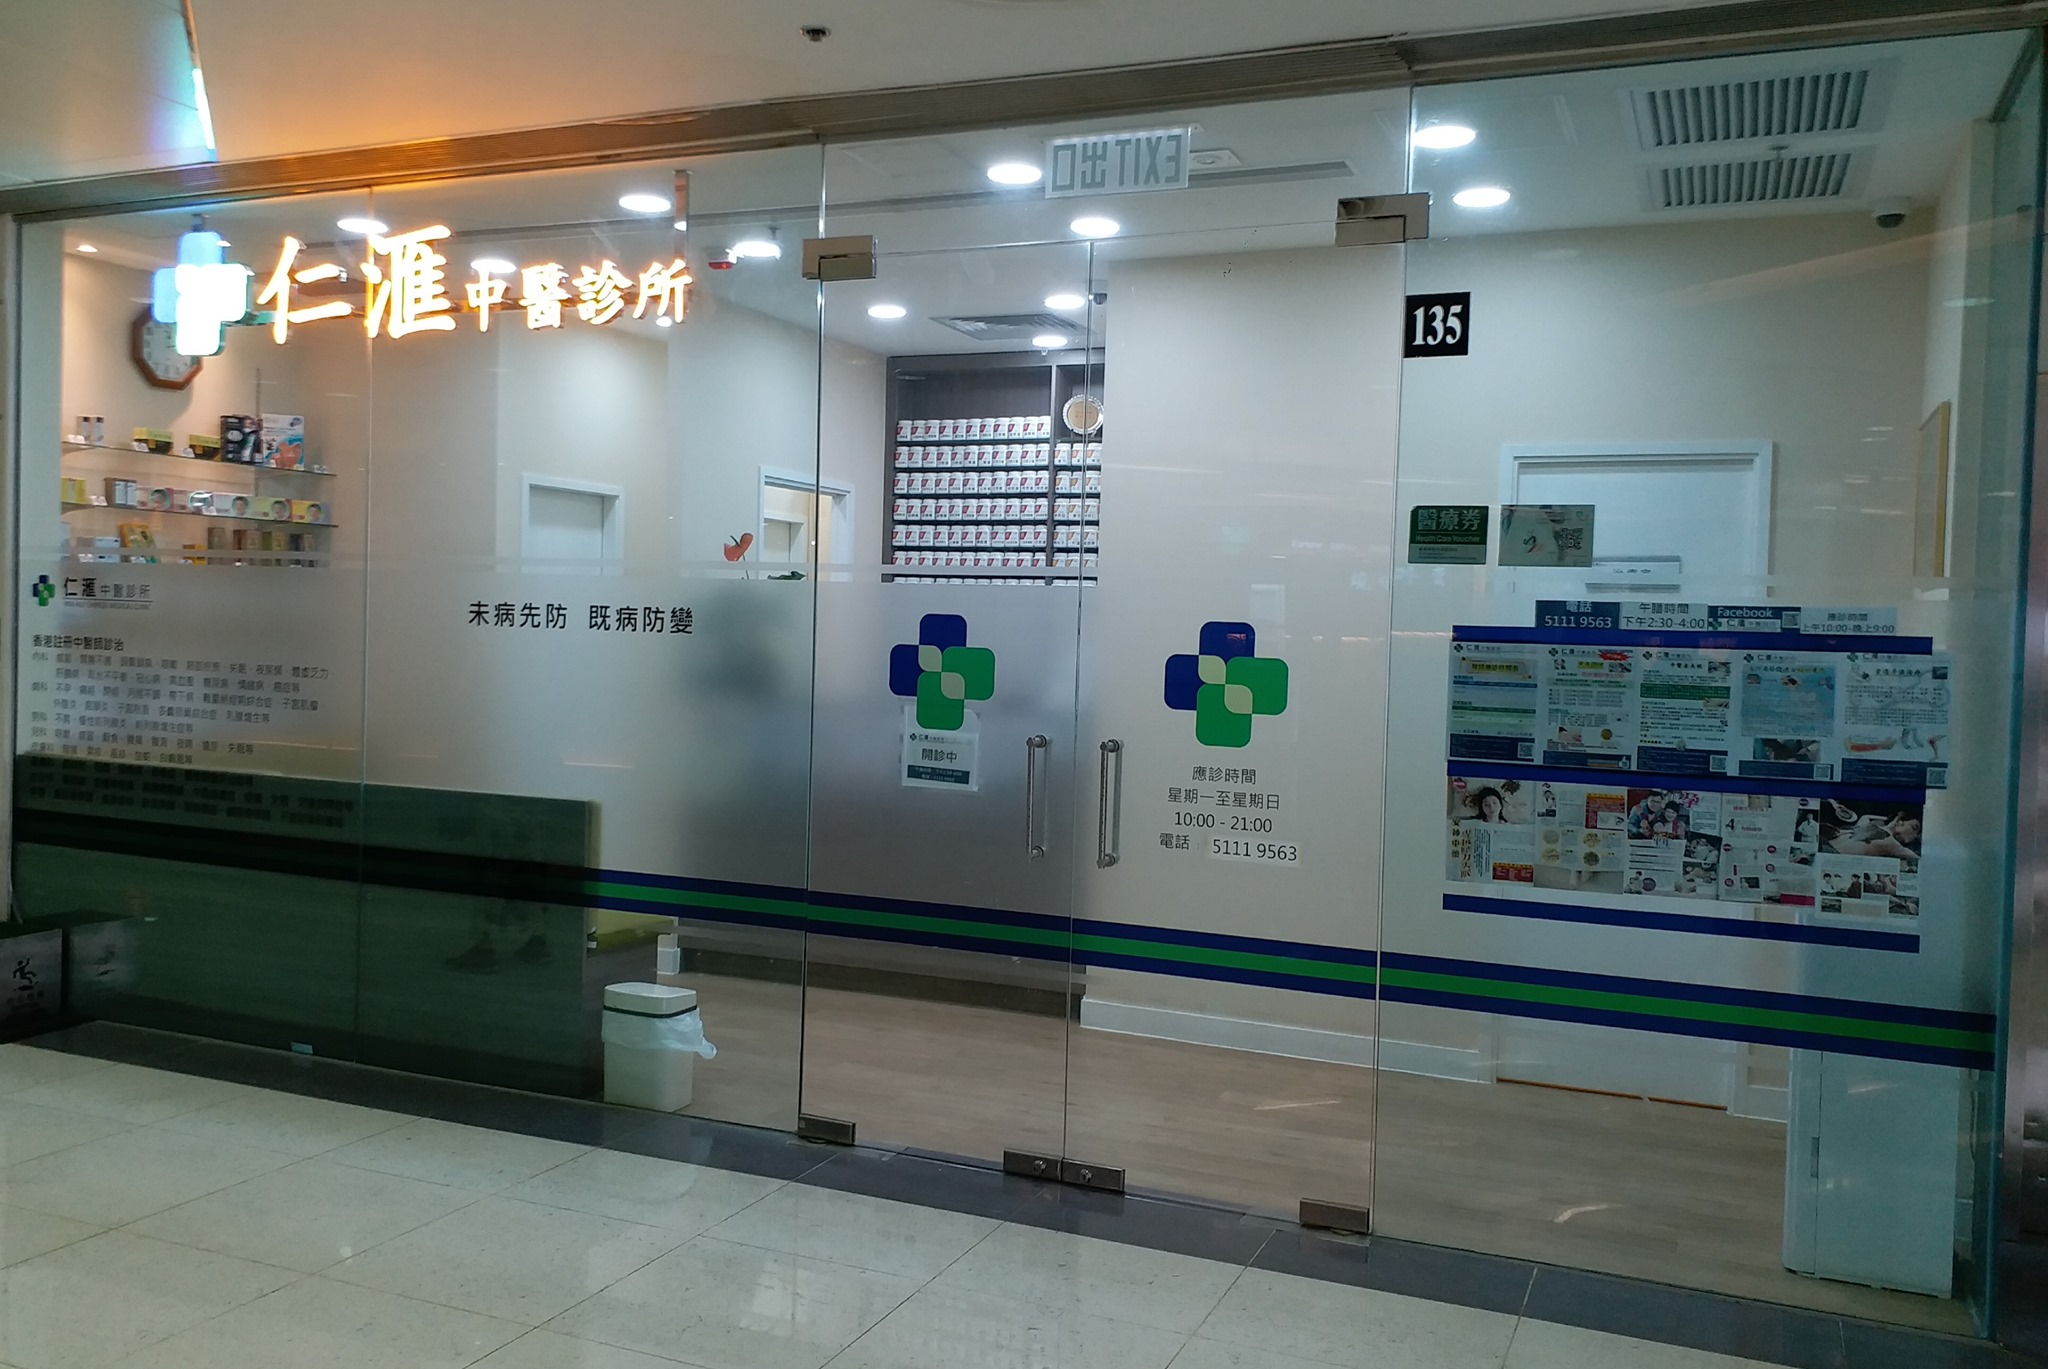 中医诊所 Chinese medicine clinic: 仁滙中醫診所